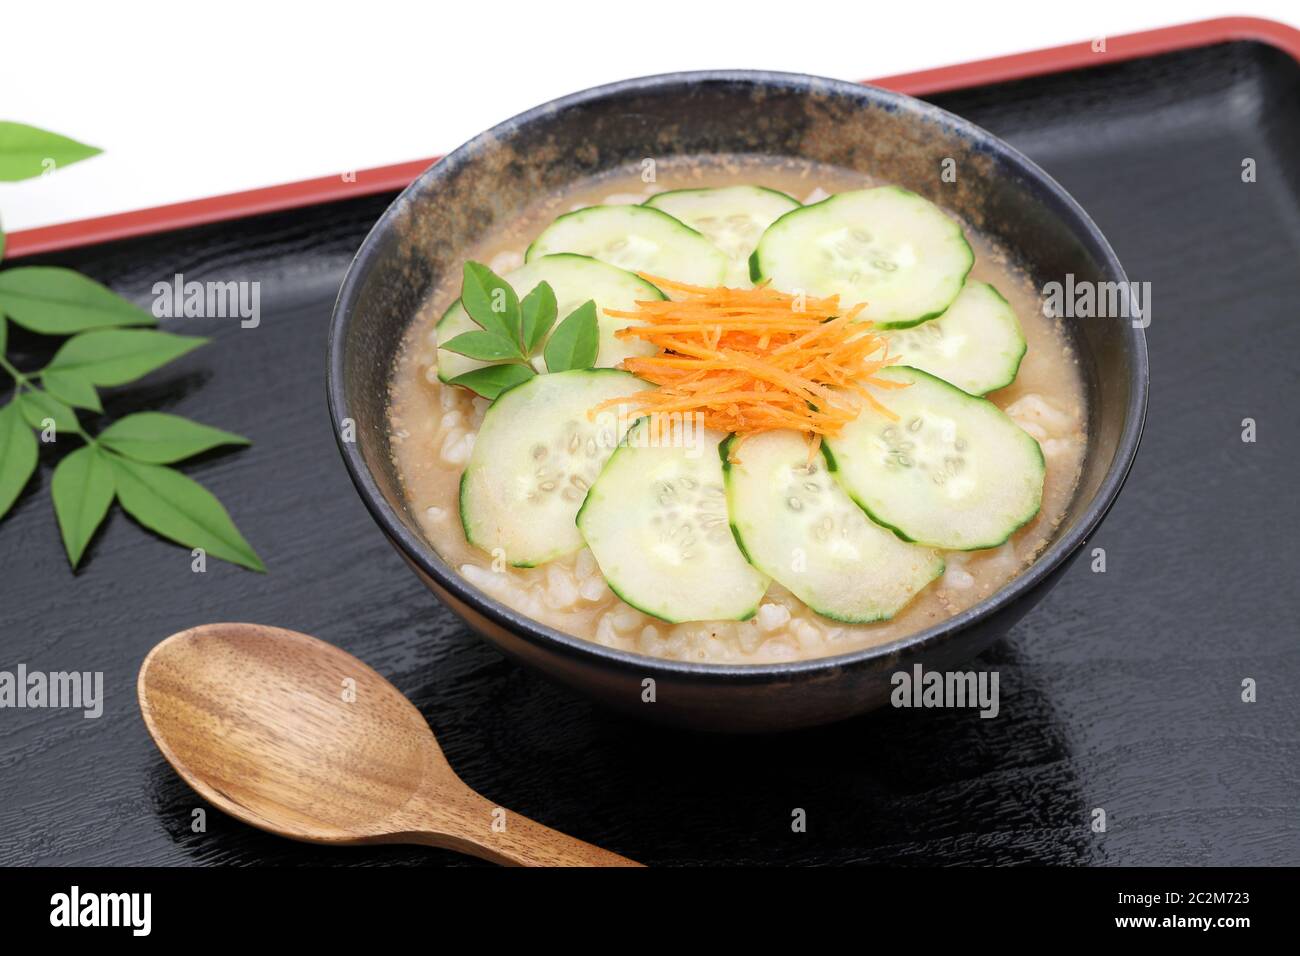 Japanische Essenstablett mit sautierten Rindfleisch mit Salat, Reis und Suppe  Stockfotografie - Alamy